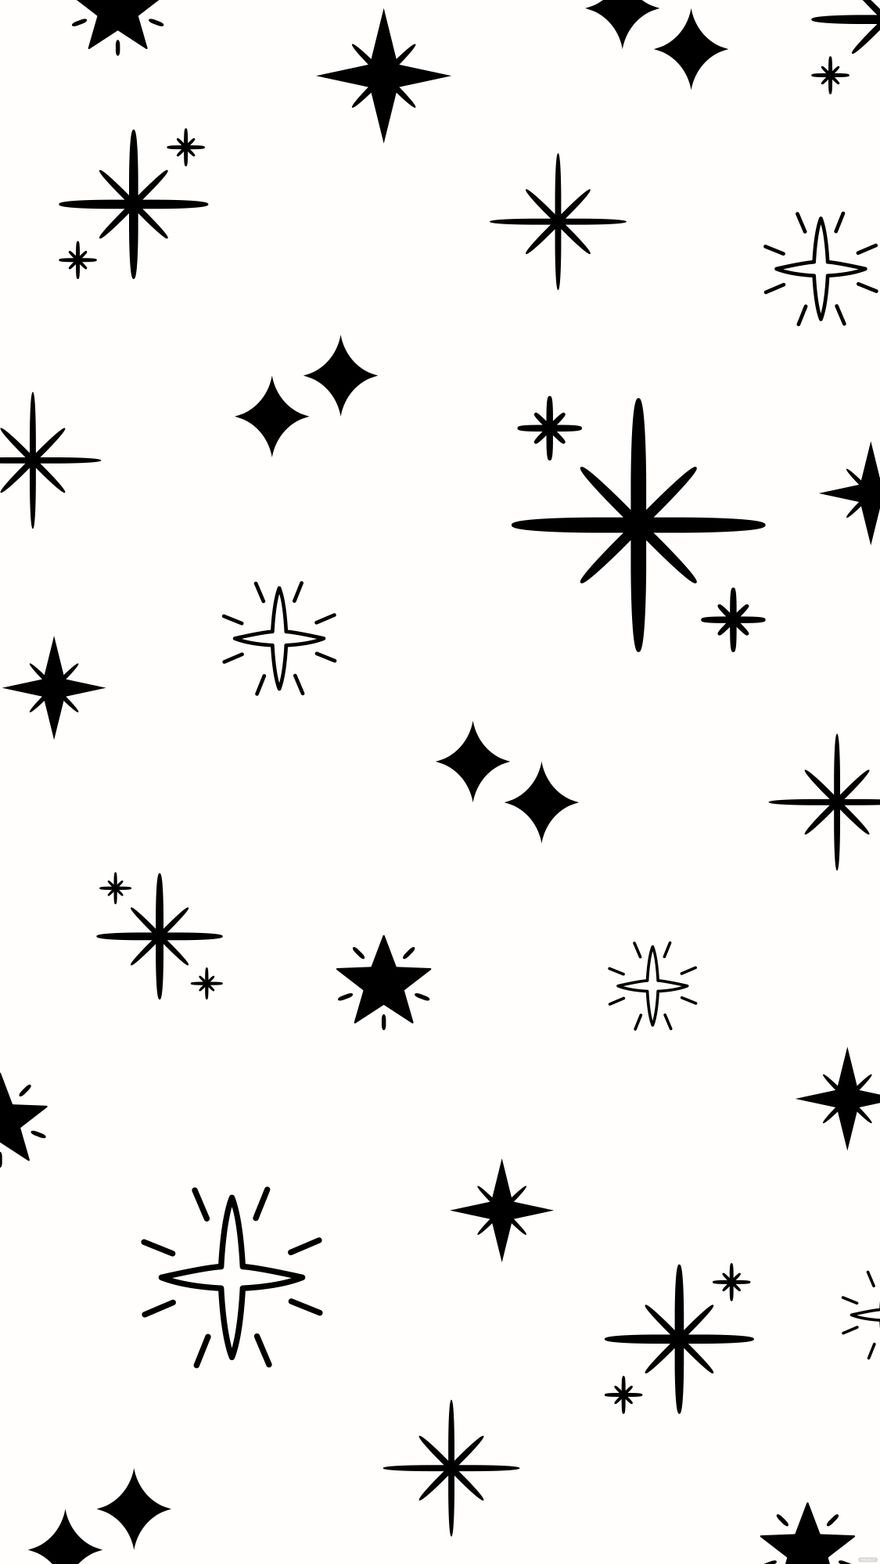 Free Black and White Star Background - EPS, Illustrator, JPG, SVG |  